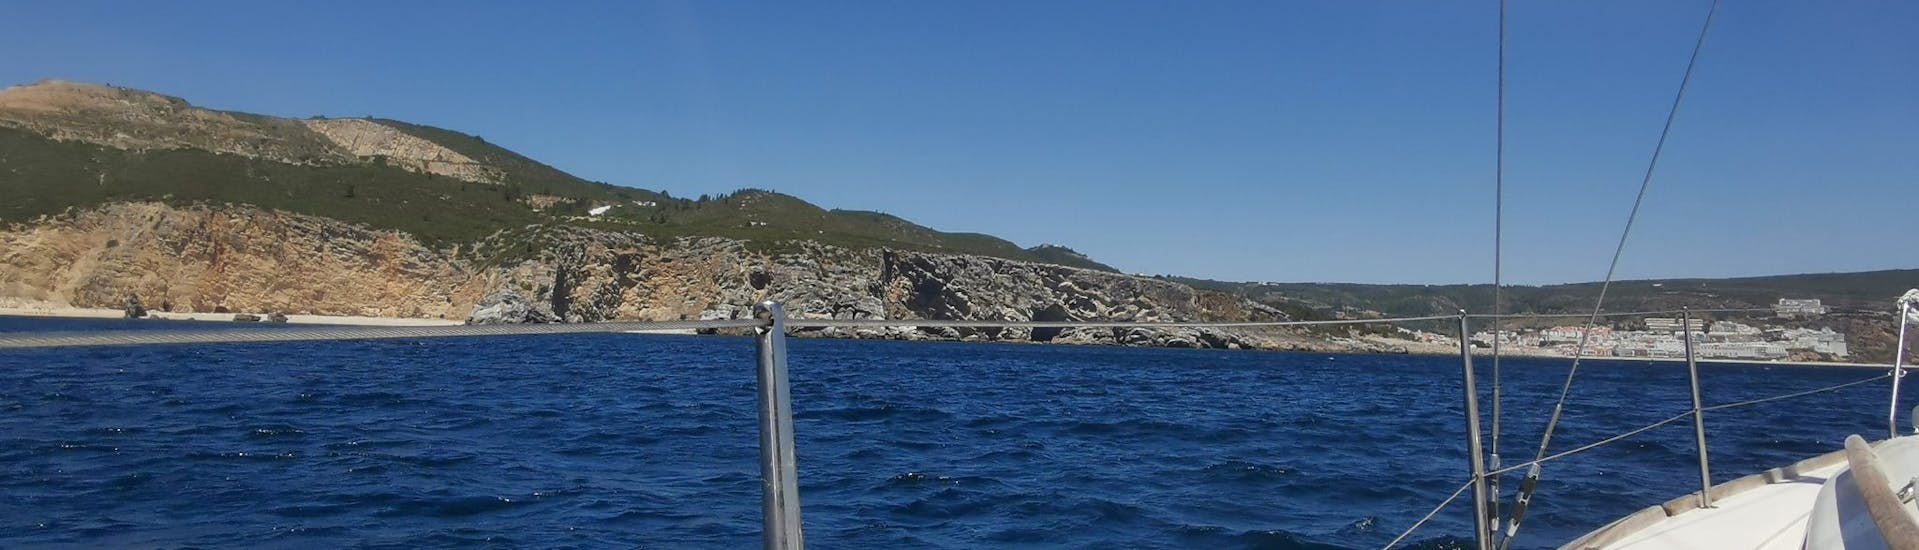 Privé zeilboottocht van Troia naar Parque Natural da Arrábida  & zwemmen.